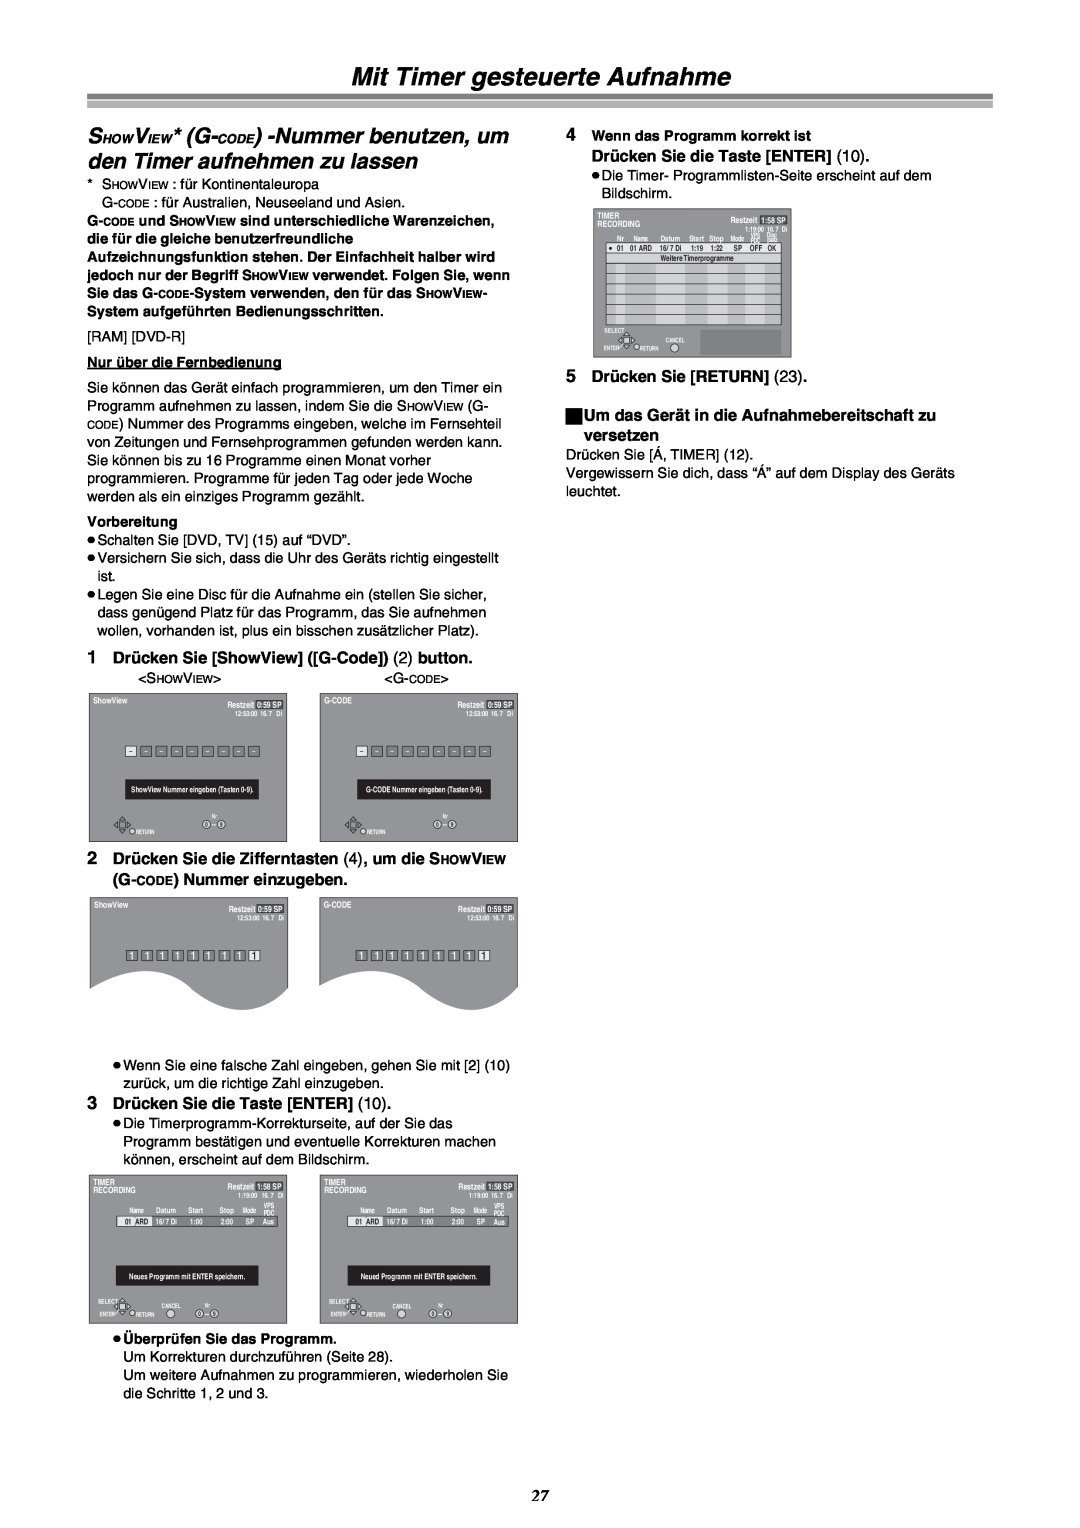 Panasonic DMR-E30 manual Mit Timer gesteuerte Aufnahme, SHOWVIEW* G-CODE -Nummer benutzen, um den Timer aufnehmen zu lassen 